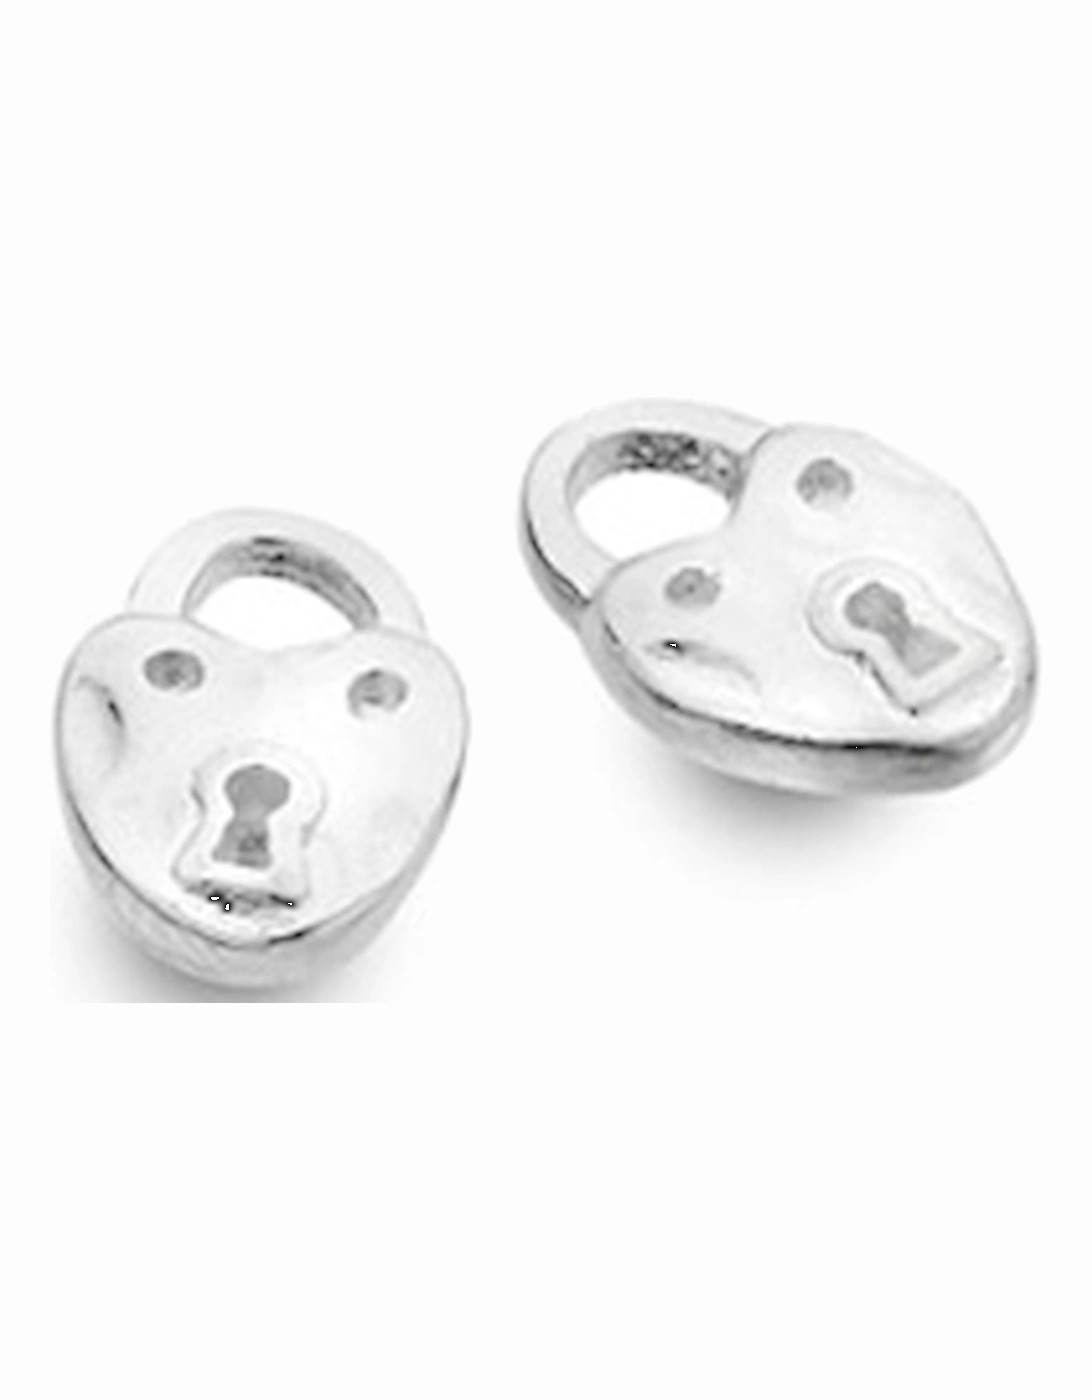 Sterling Silver Stud Earrings - Origins Heart Padlock, 2 of 1